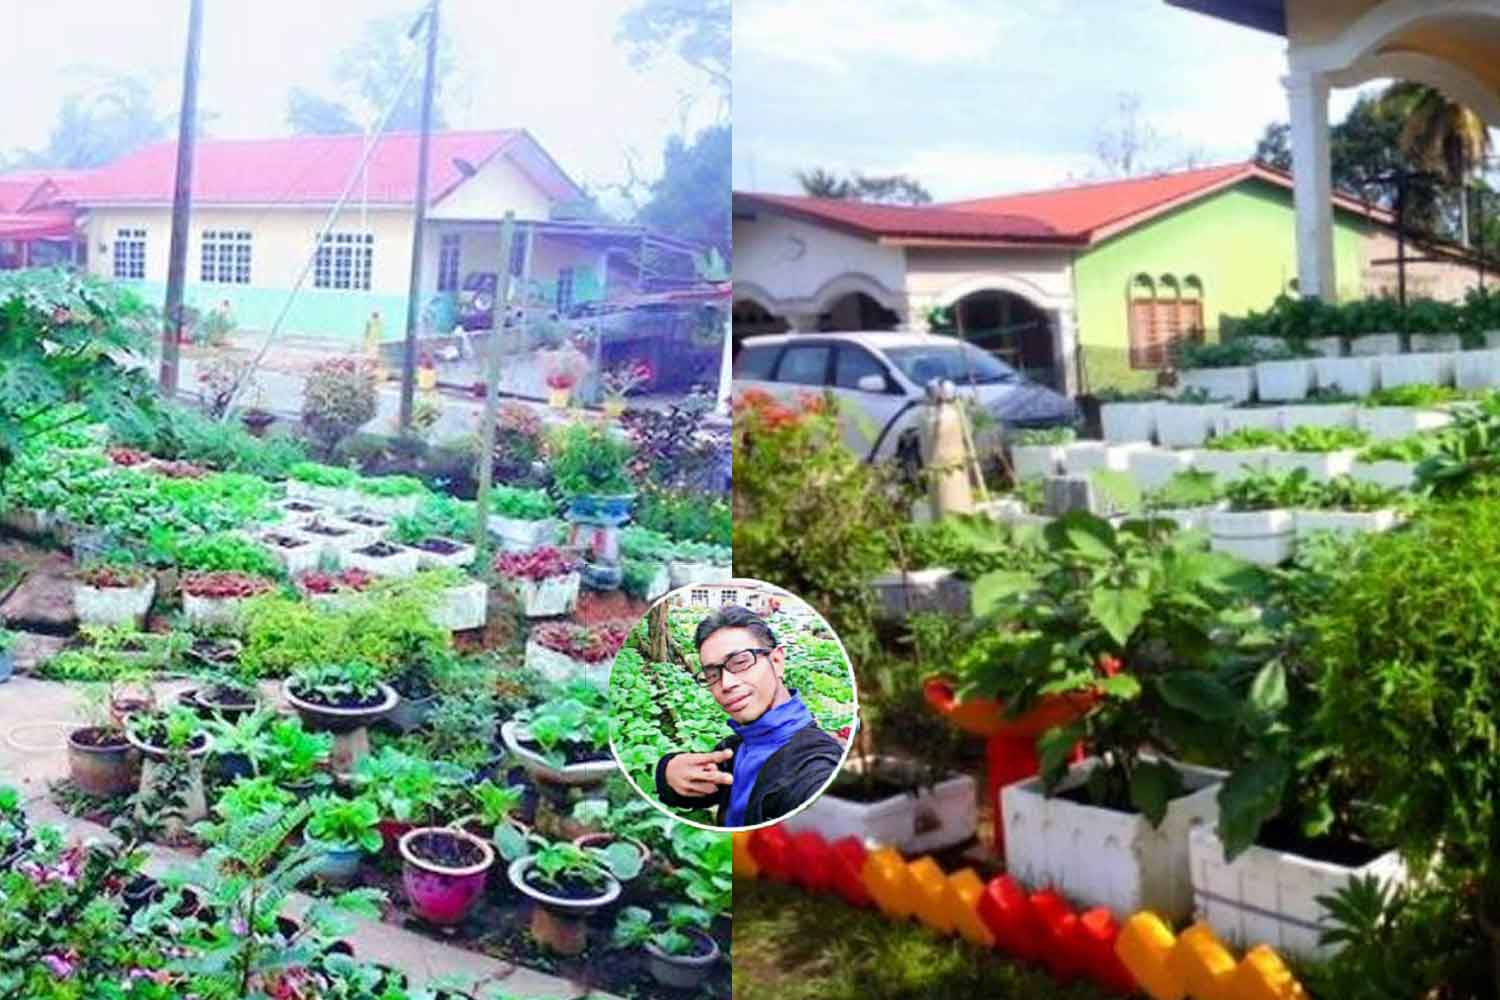 Tanam sayur keliling rumah jana pendapatan RM4,000 sebulan